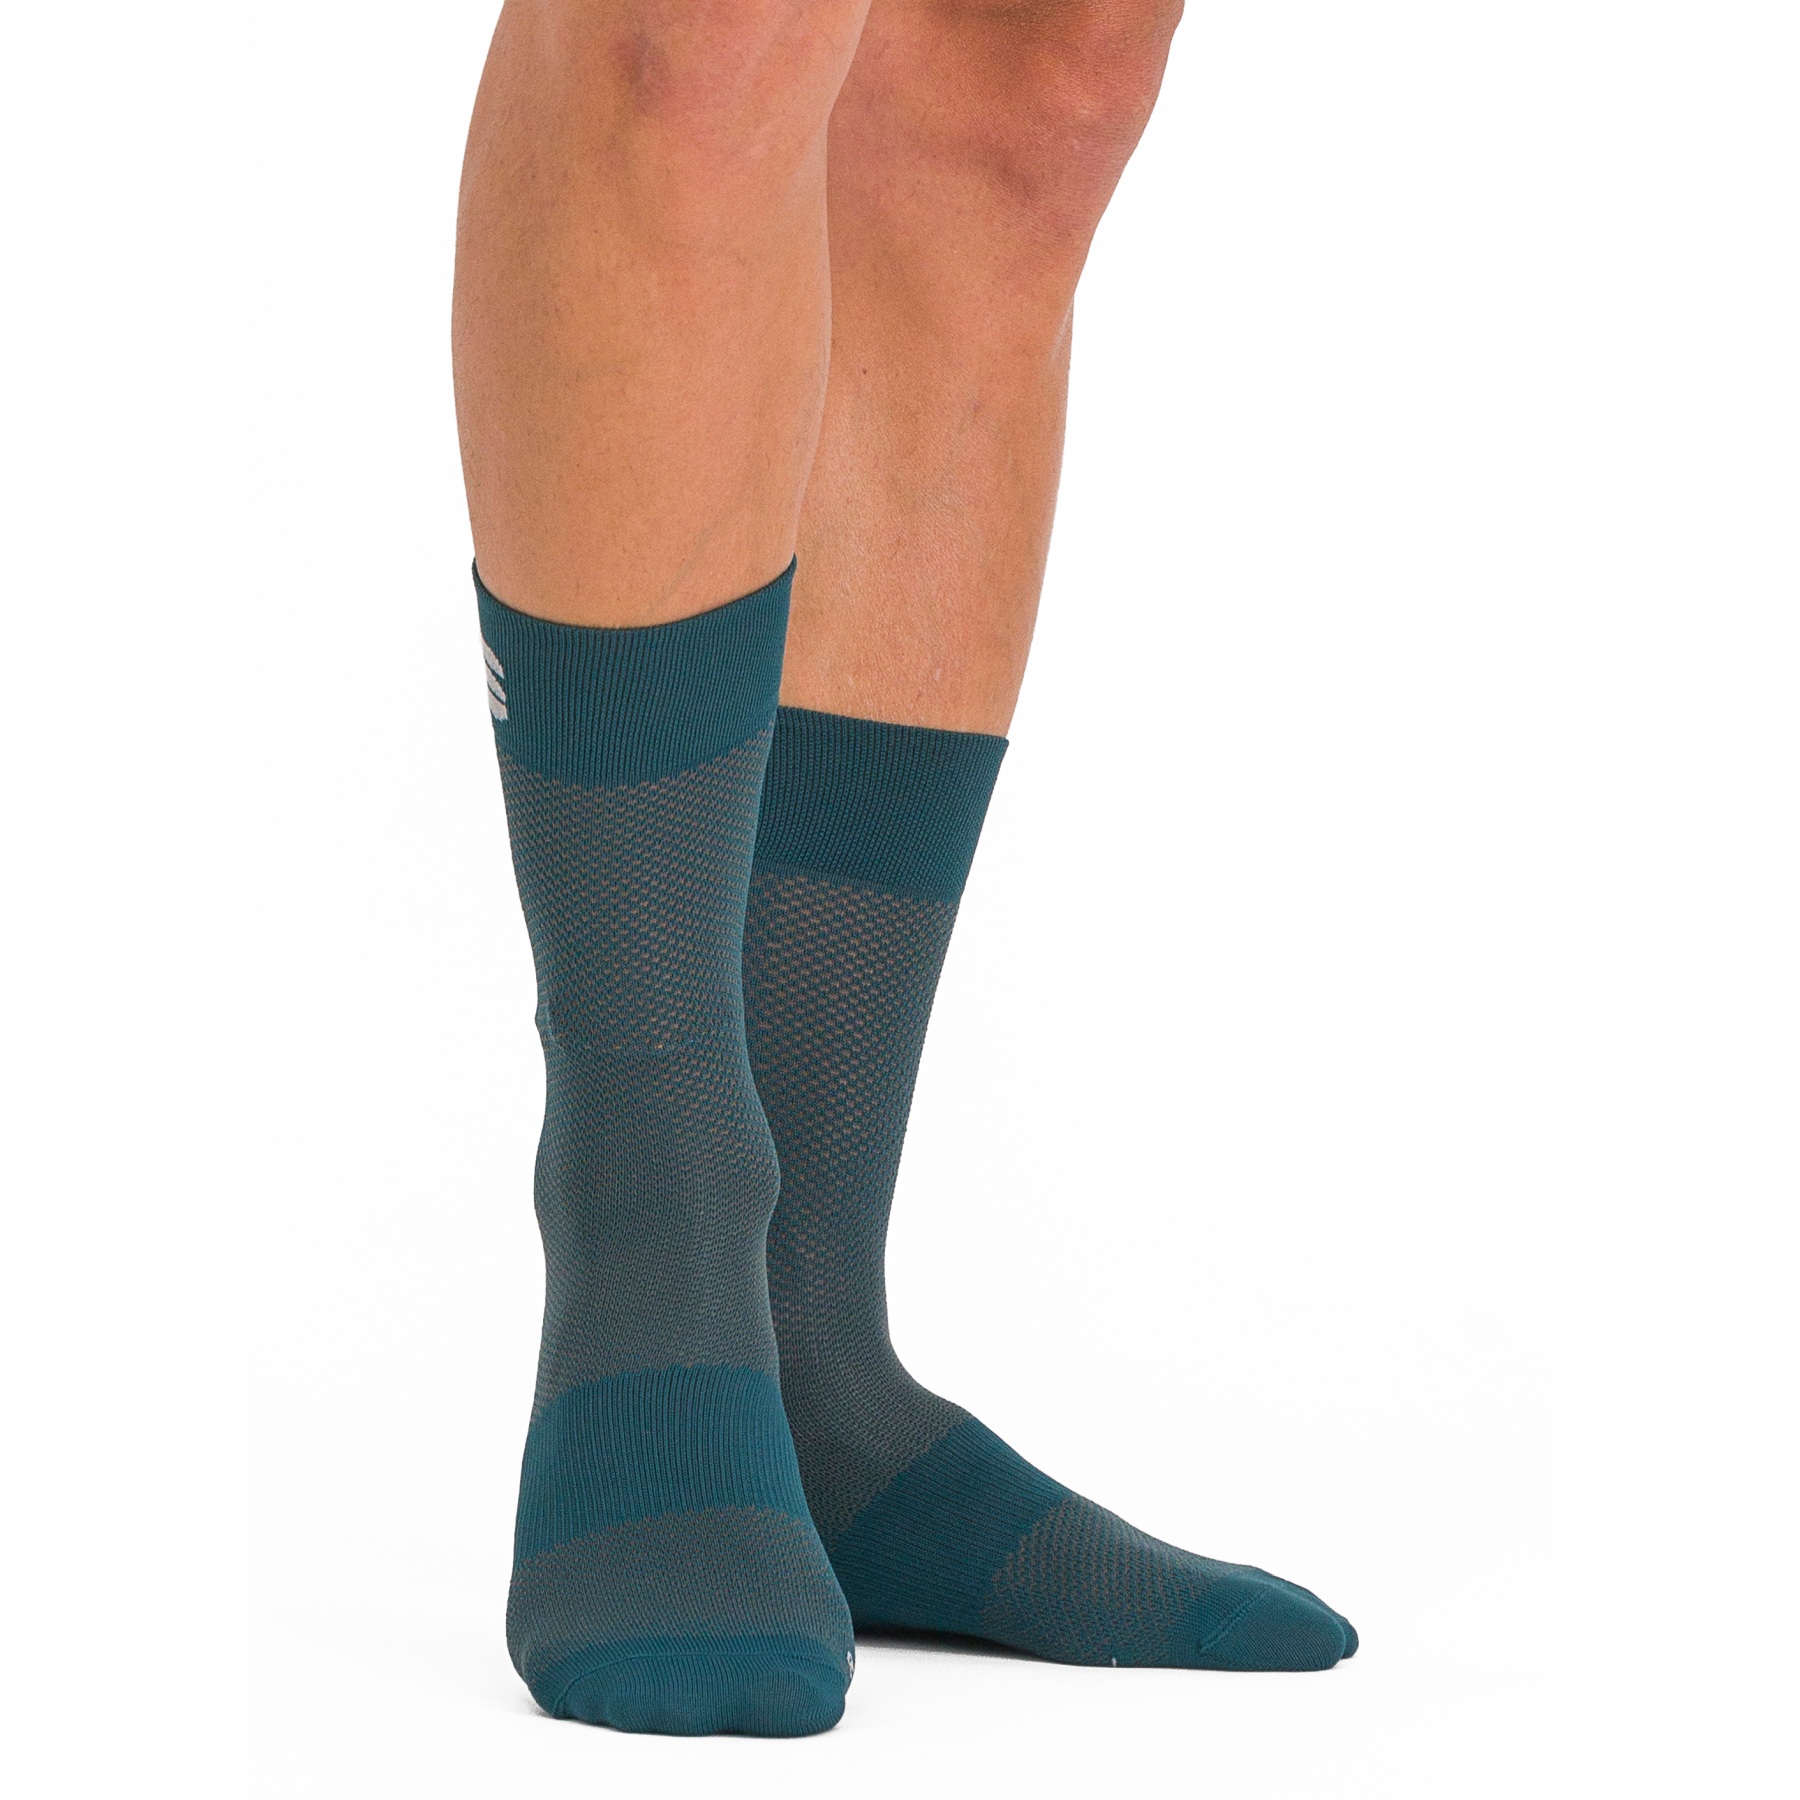 Produktbild von Sportful Matchy Socken Herren - 374 Shade Spruce